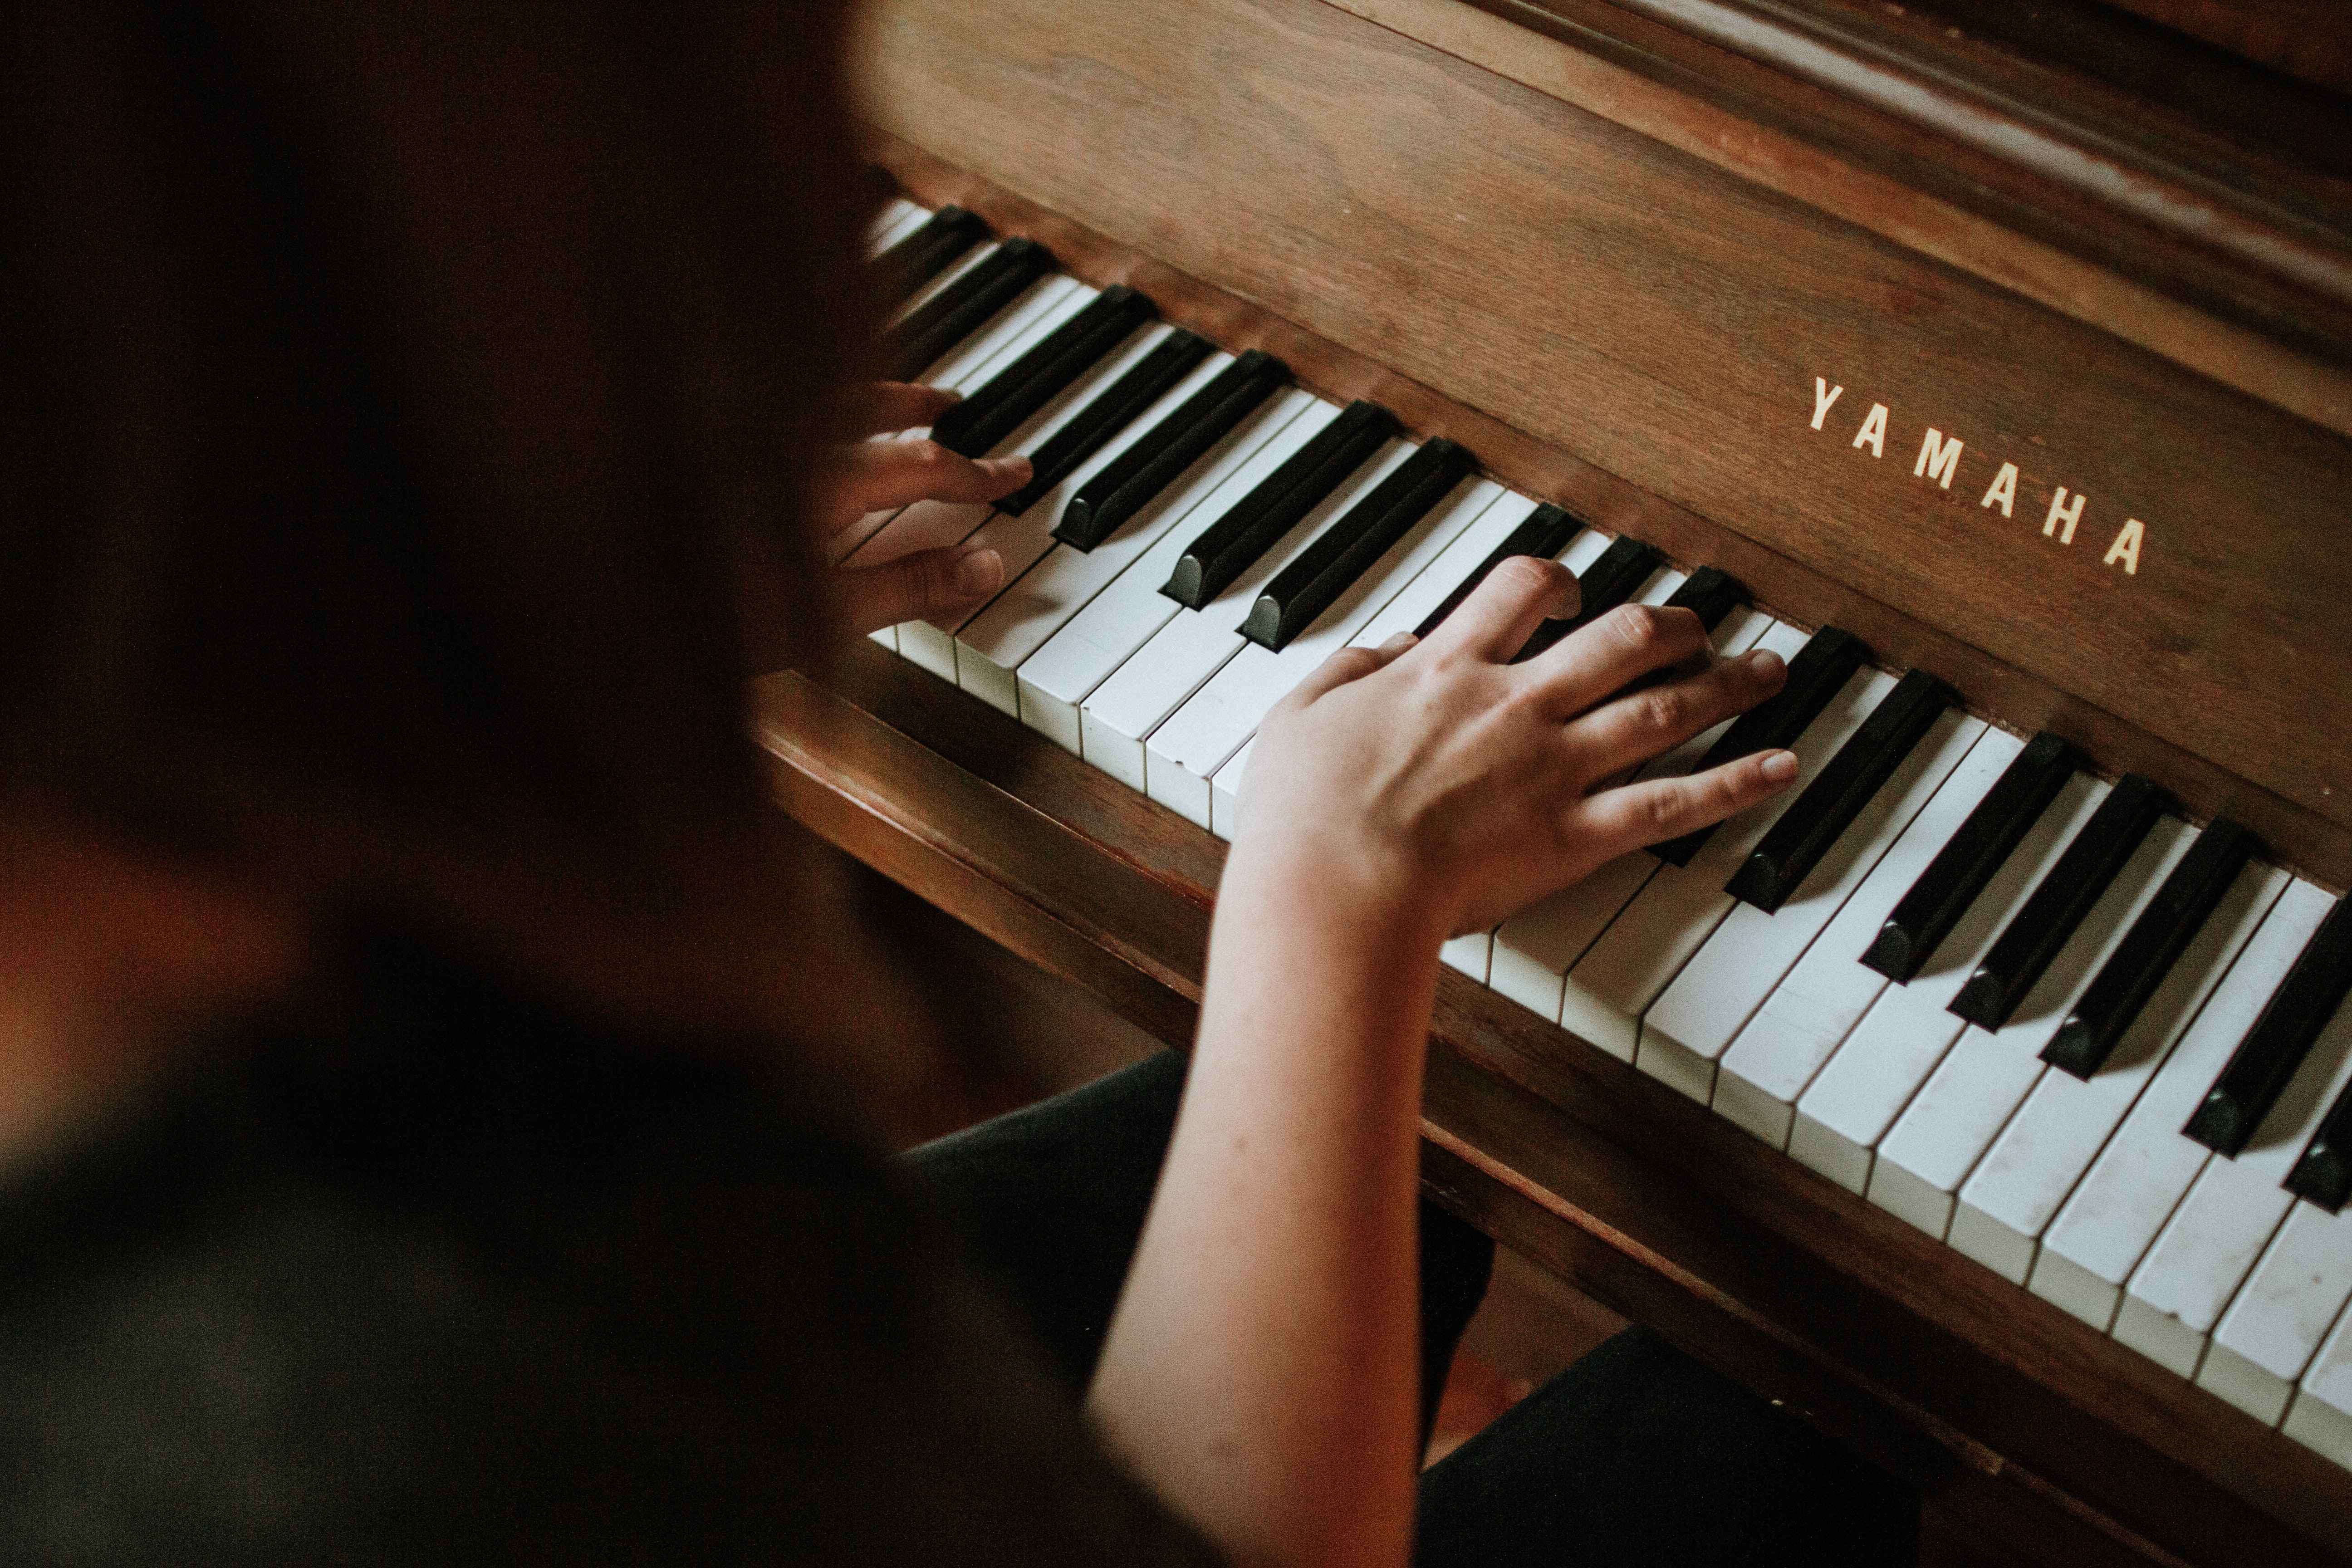 Aulas de Piano Infantil  Quer aprender a tocar piano? Ou ainda